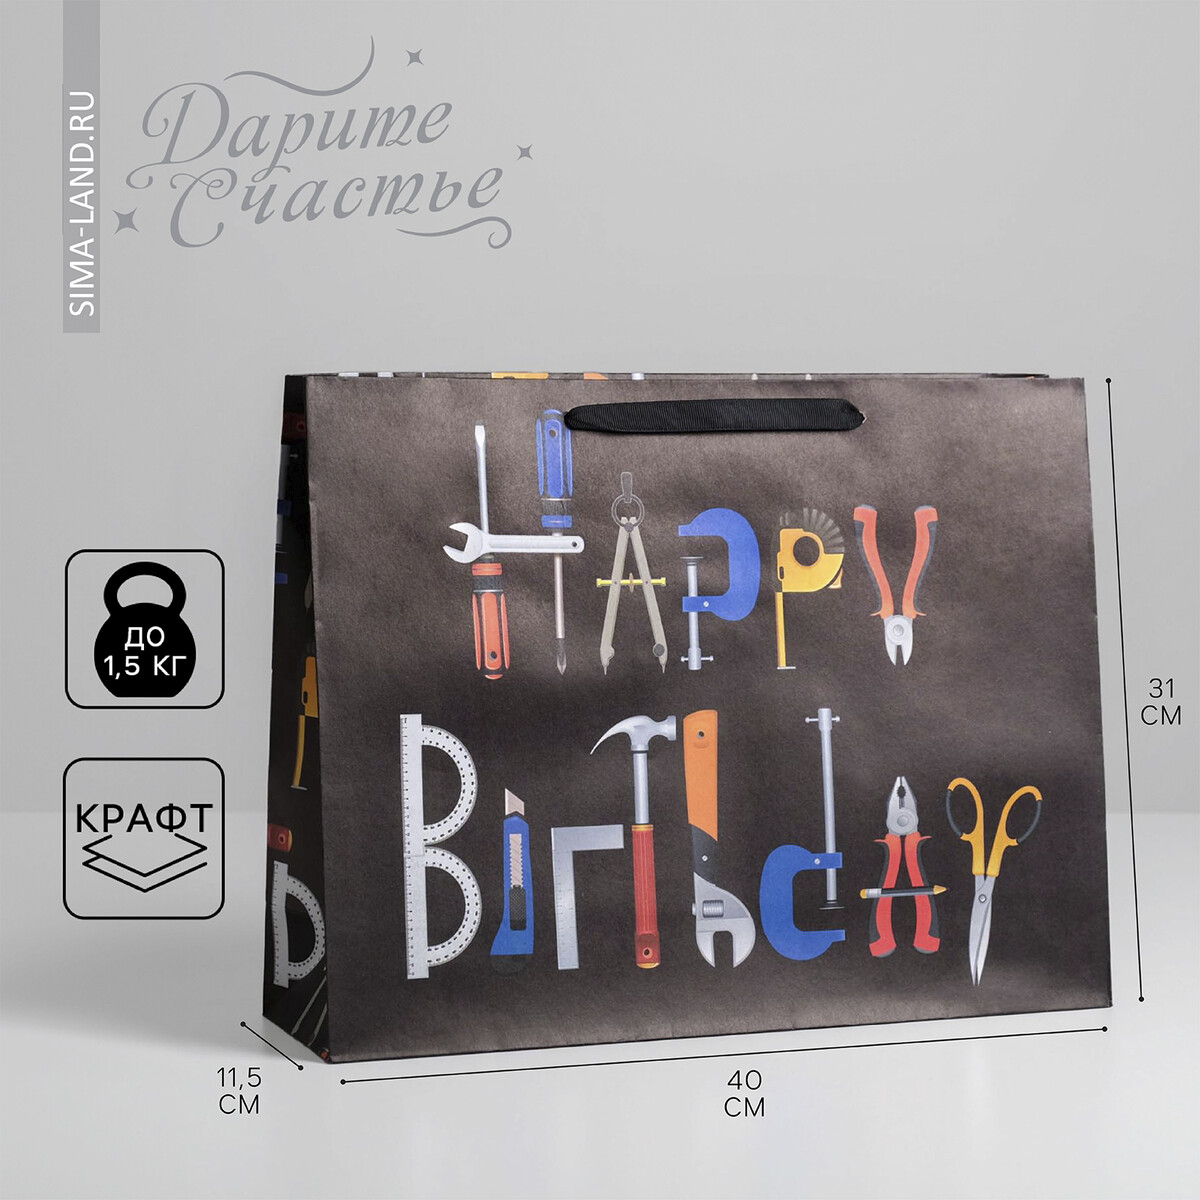 

Пакет подарочный крафтовый горизонтальный, упаковка, happy birthday, l 40 х 31 х 11.5 см, Черный